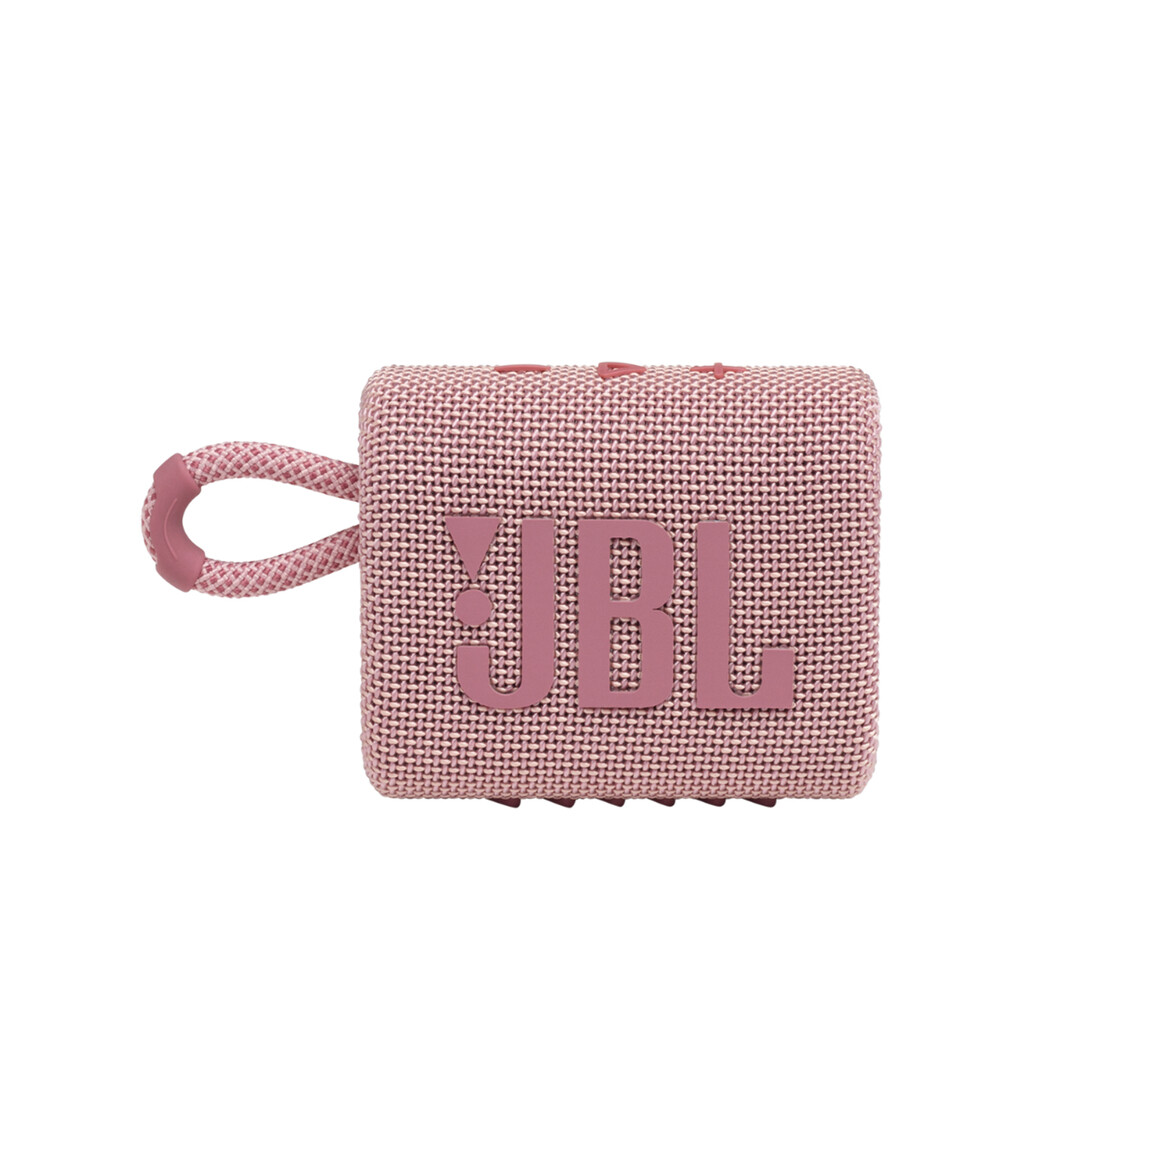 <h1>JBL Go3, Bluetooth-Lautsprecher, pink</h1>